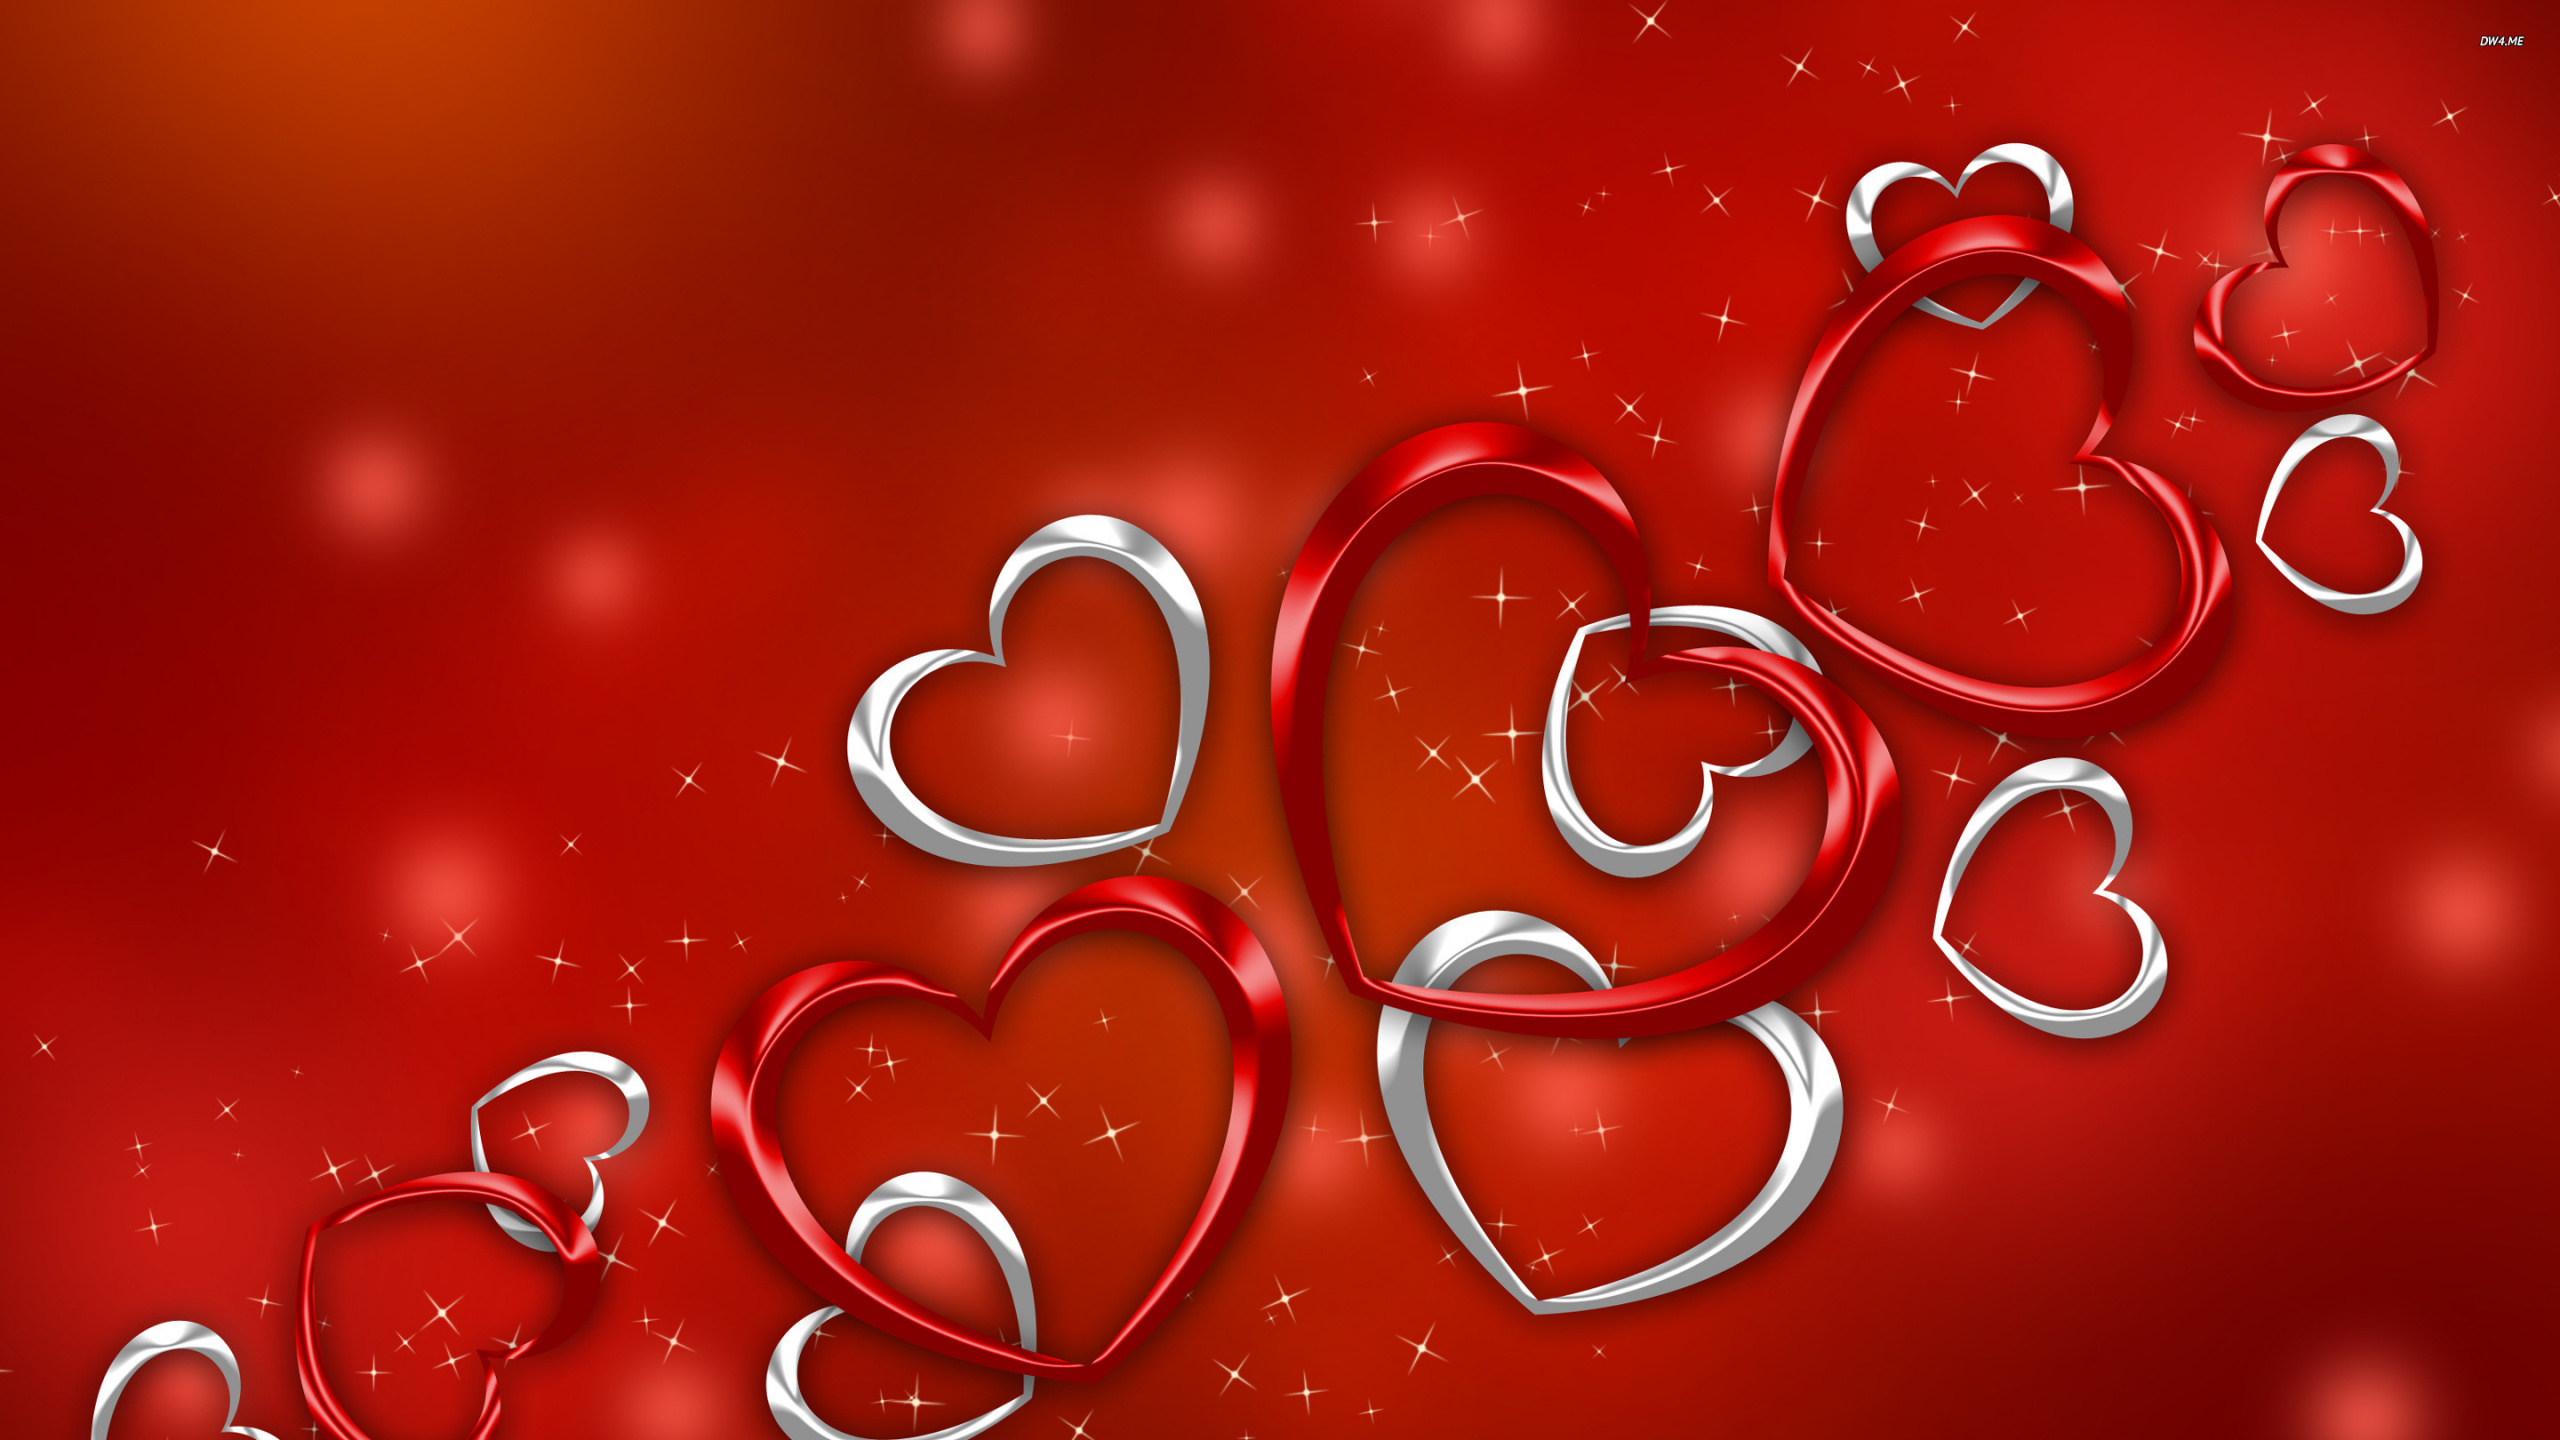 心脏, 红色的, 爱情, 文本, 假日 壁纸 2560x1440 允许